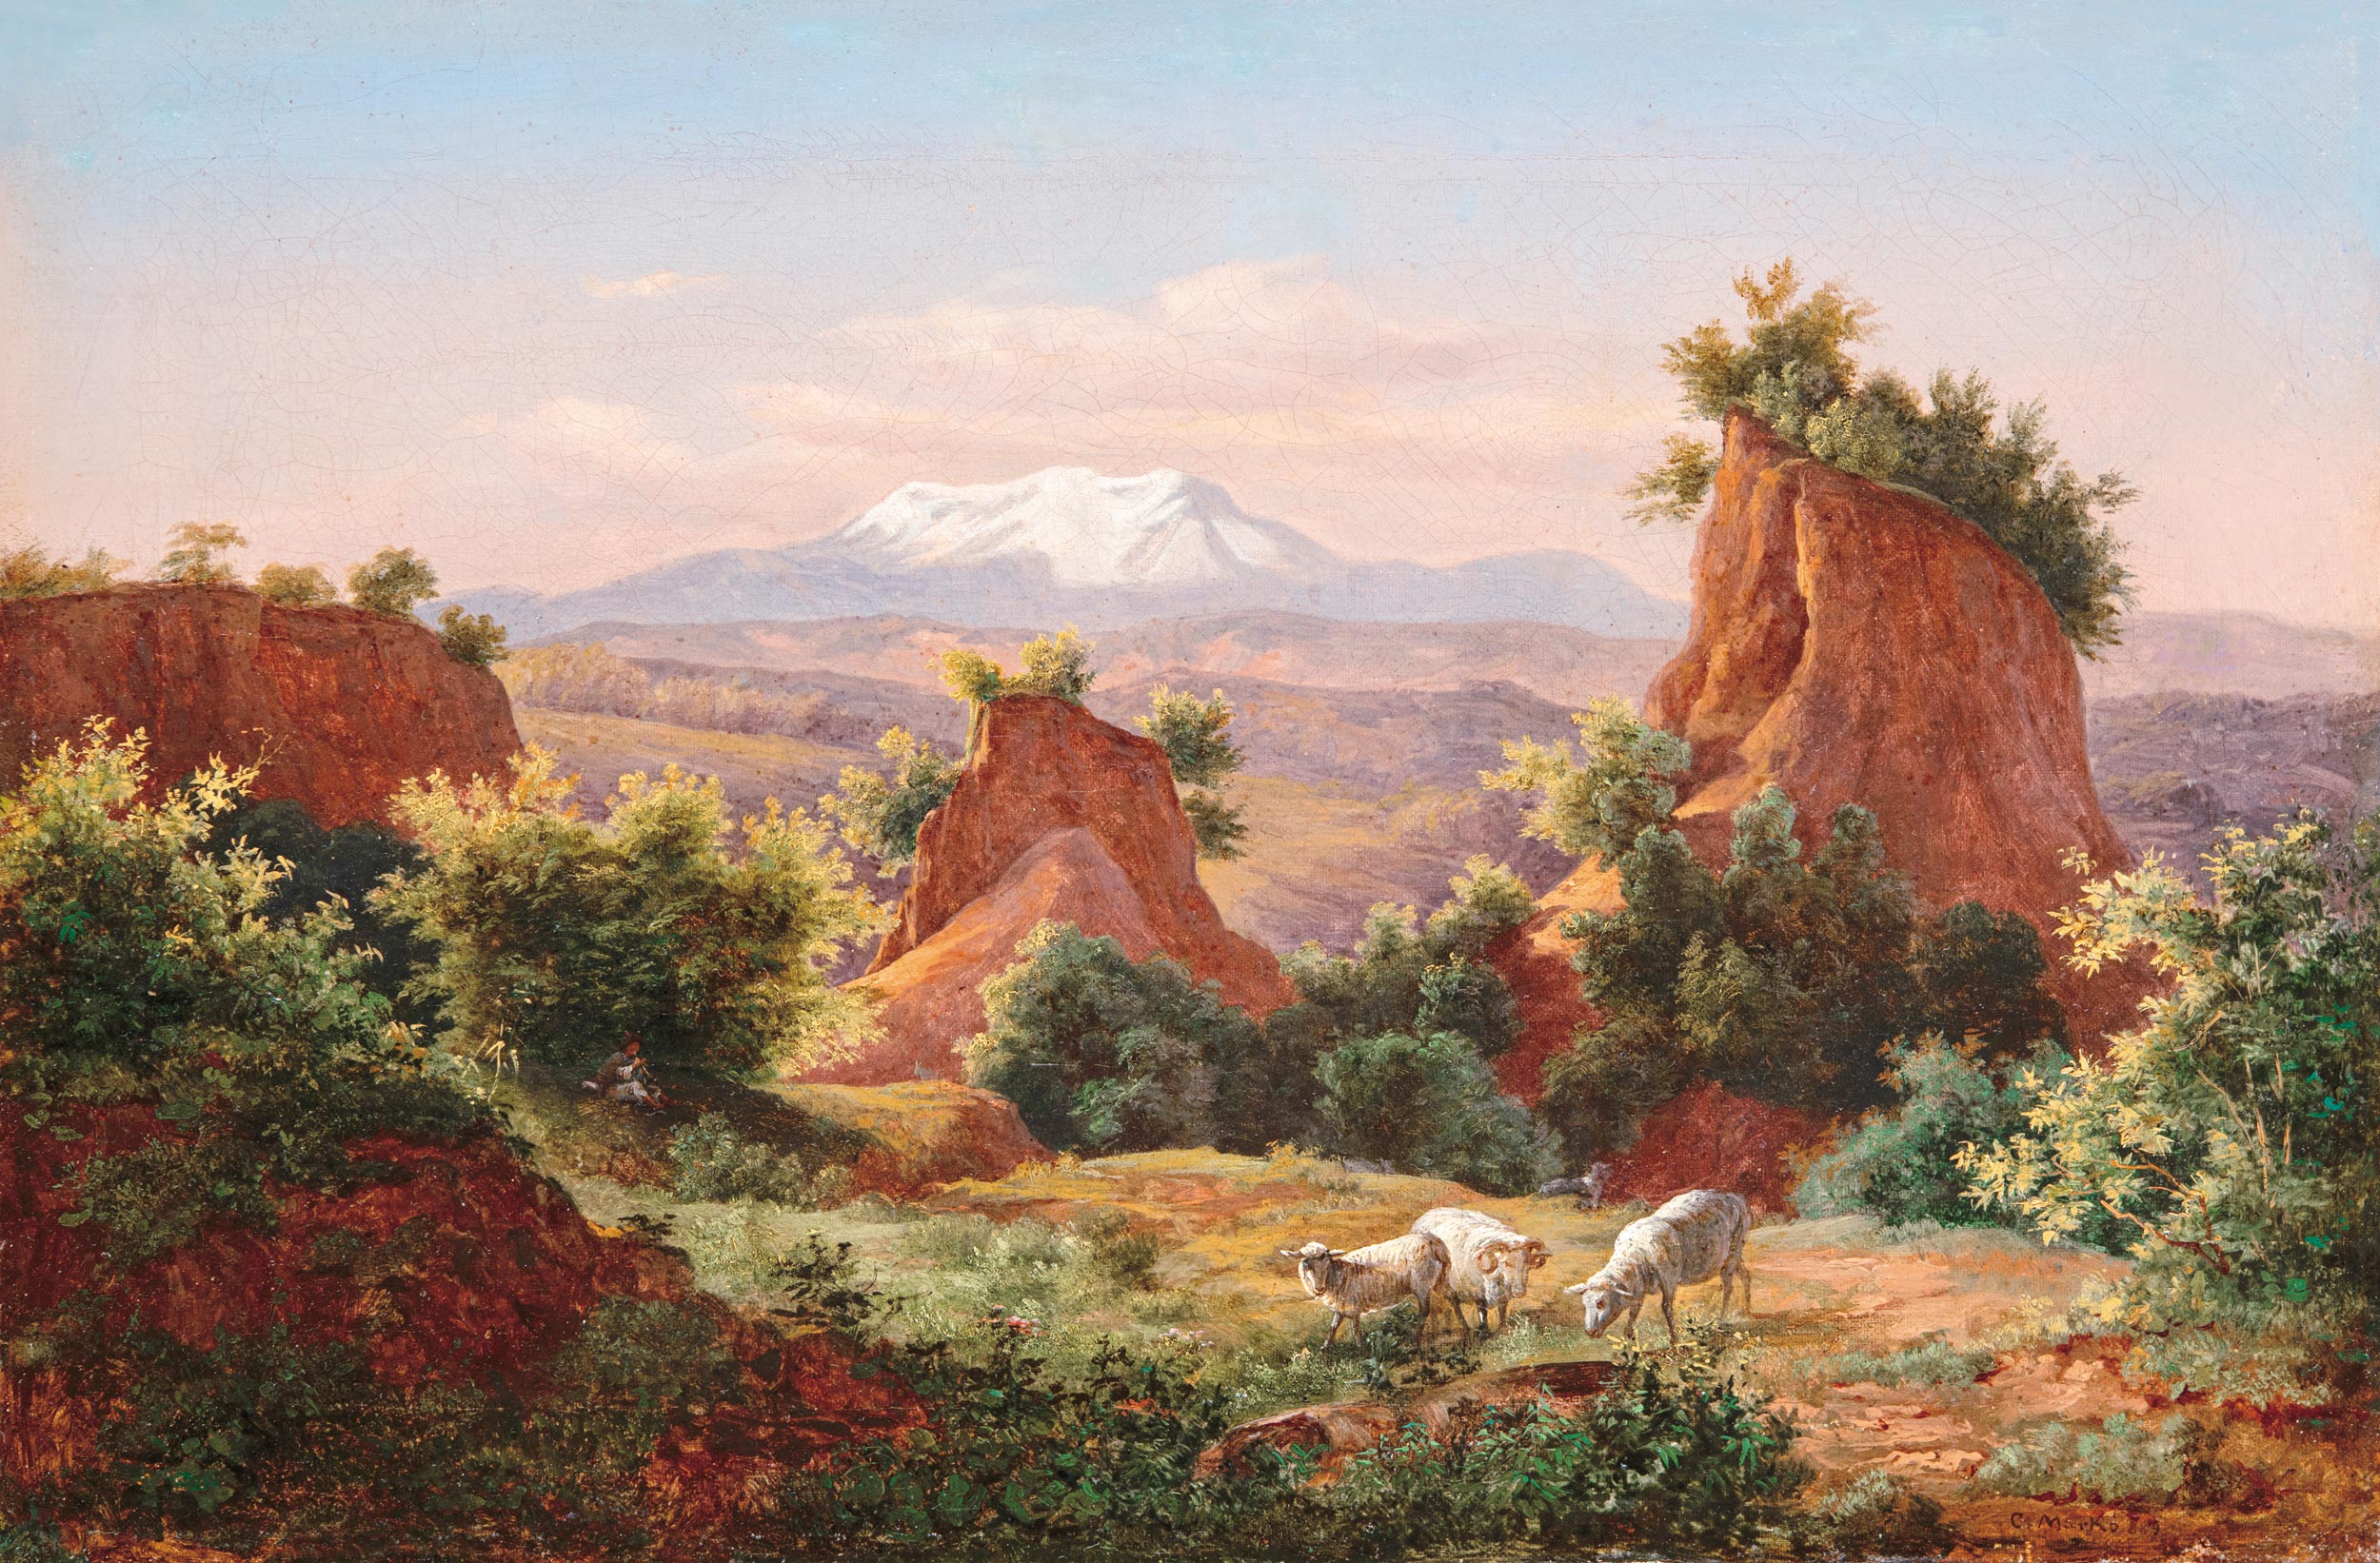 Markó Károly, Ifj. (1822 - 1891) Hegyvidéki táj, 1889